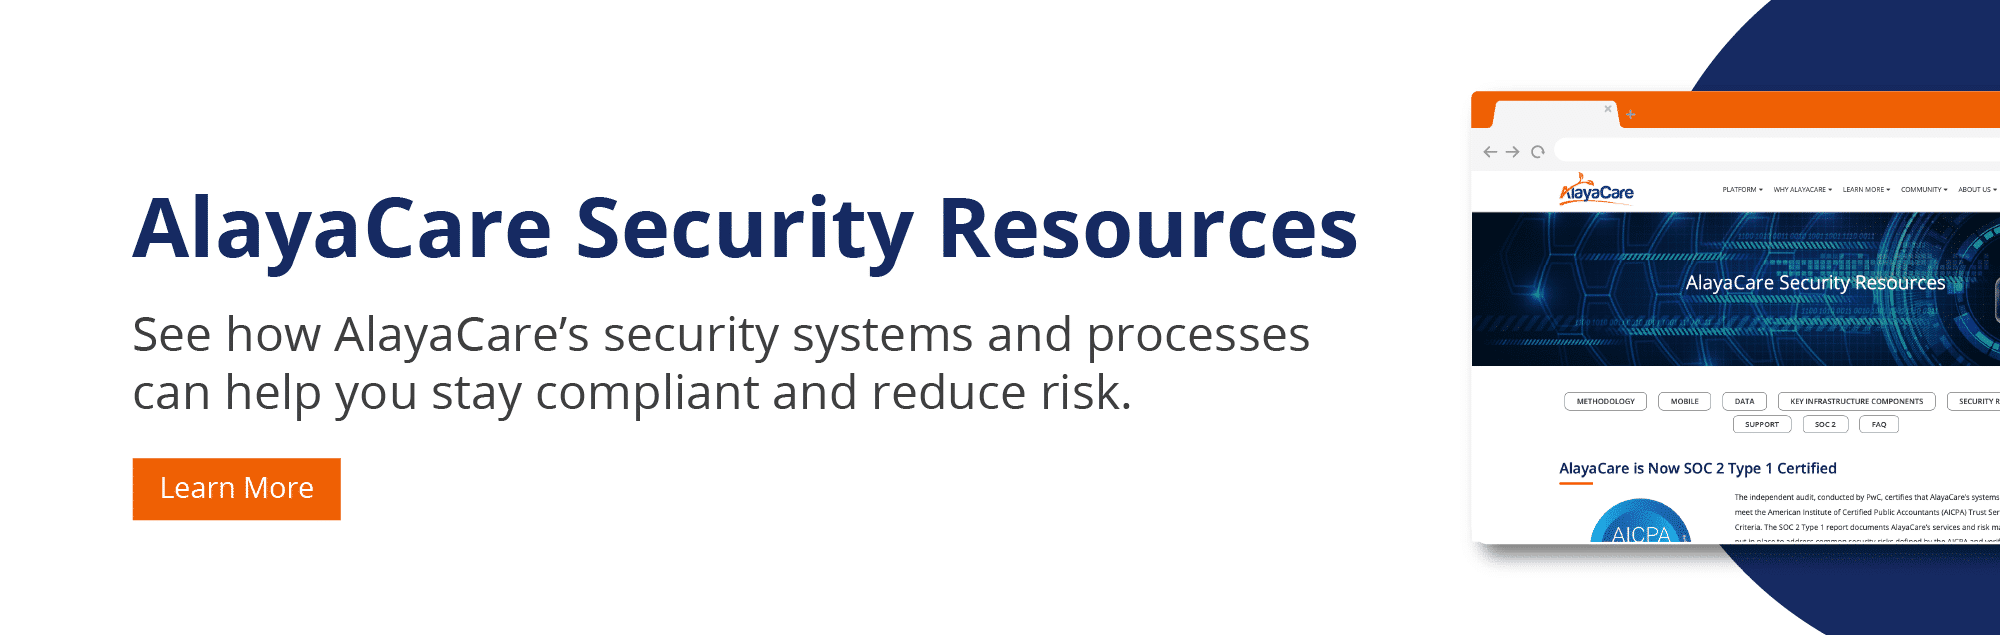 AlayaCare Security Resources CTA